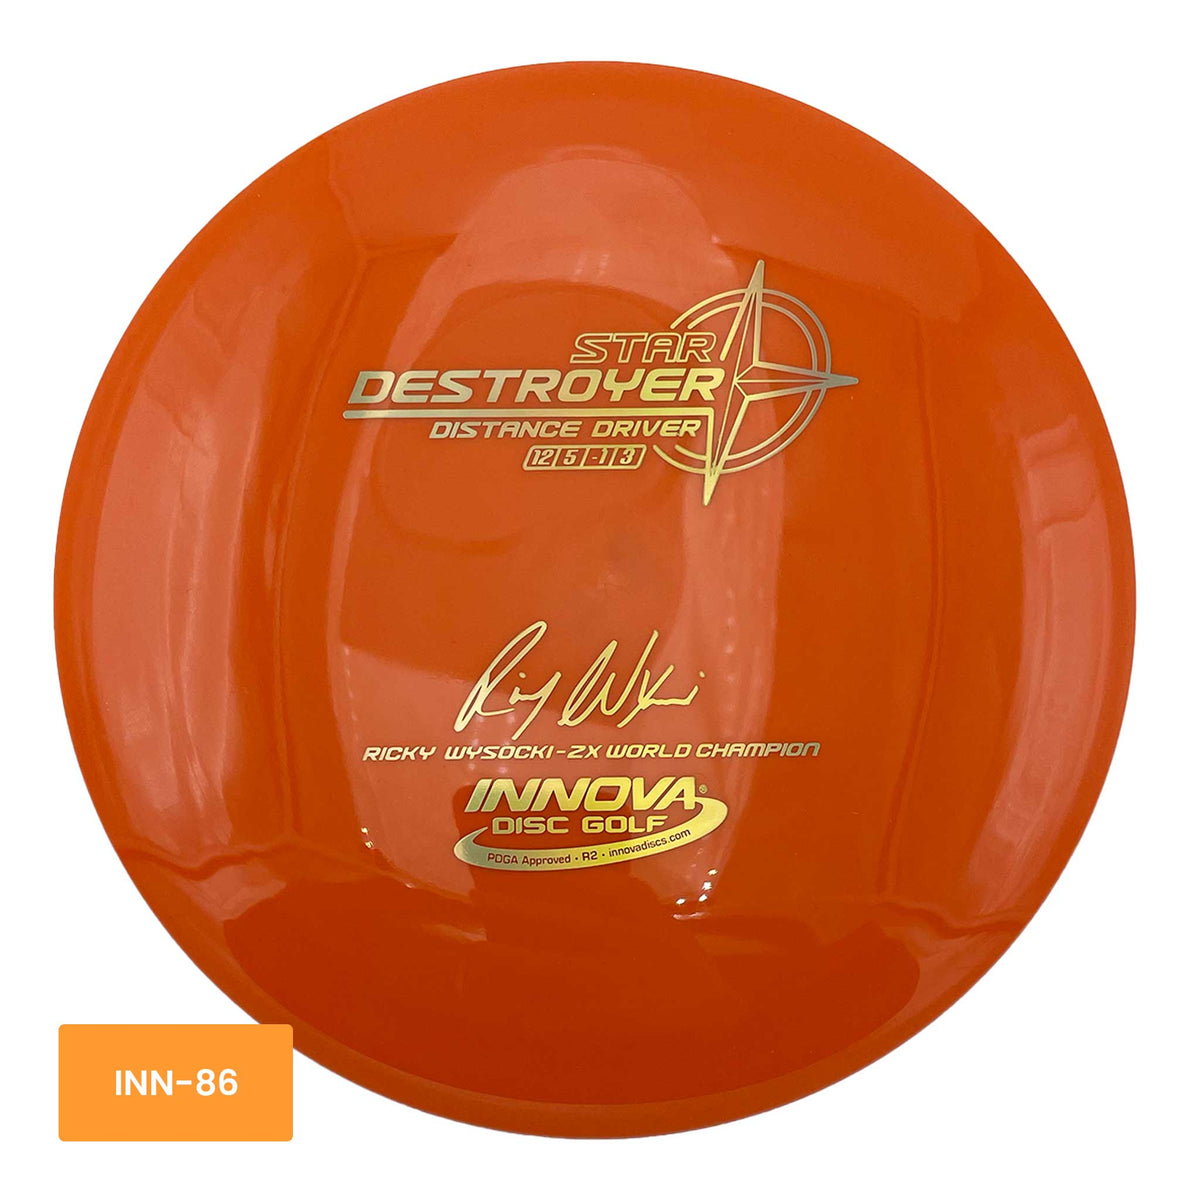 Innova Disc Golf Star Destroyer distance driver - Orange